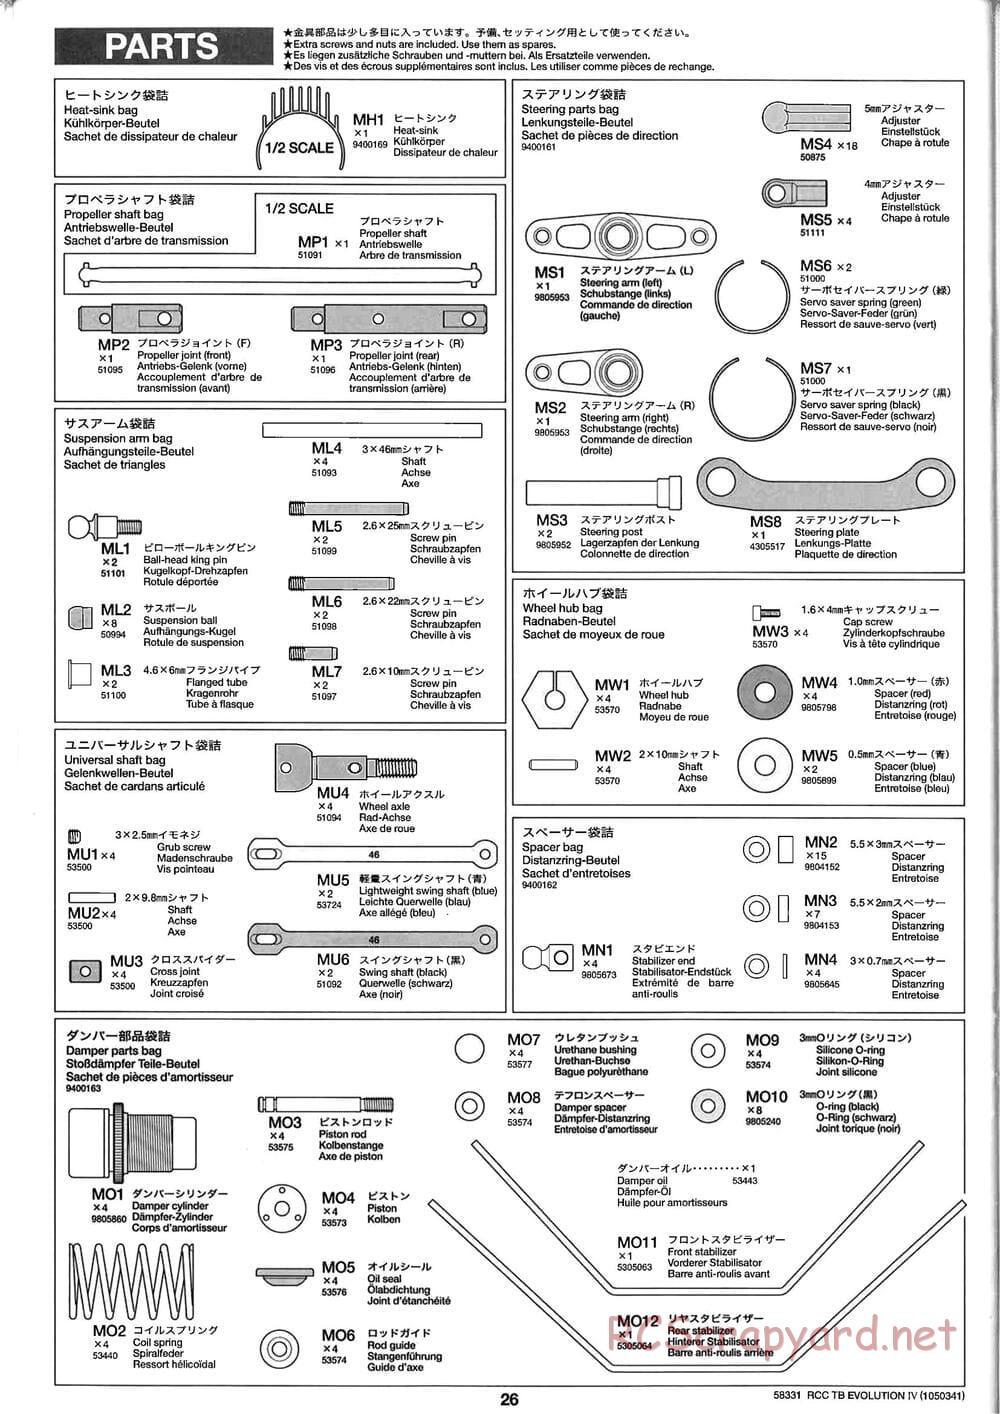 Tamiya - TB Evolution IV Chassis - Manual - Page 26